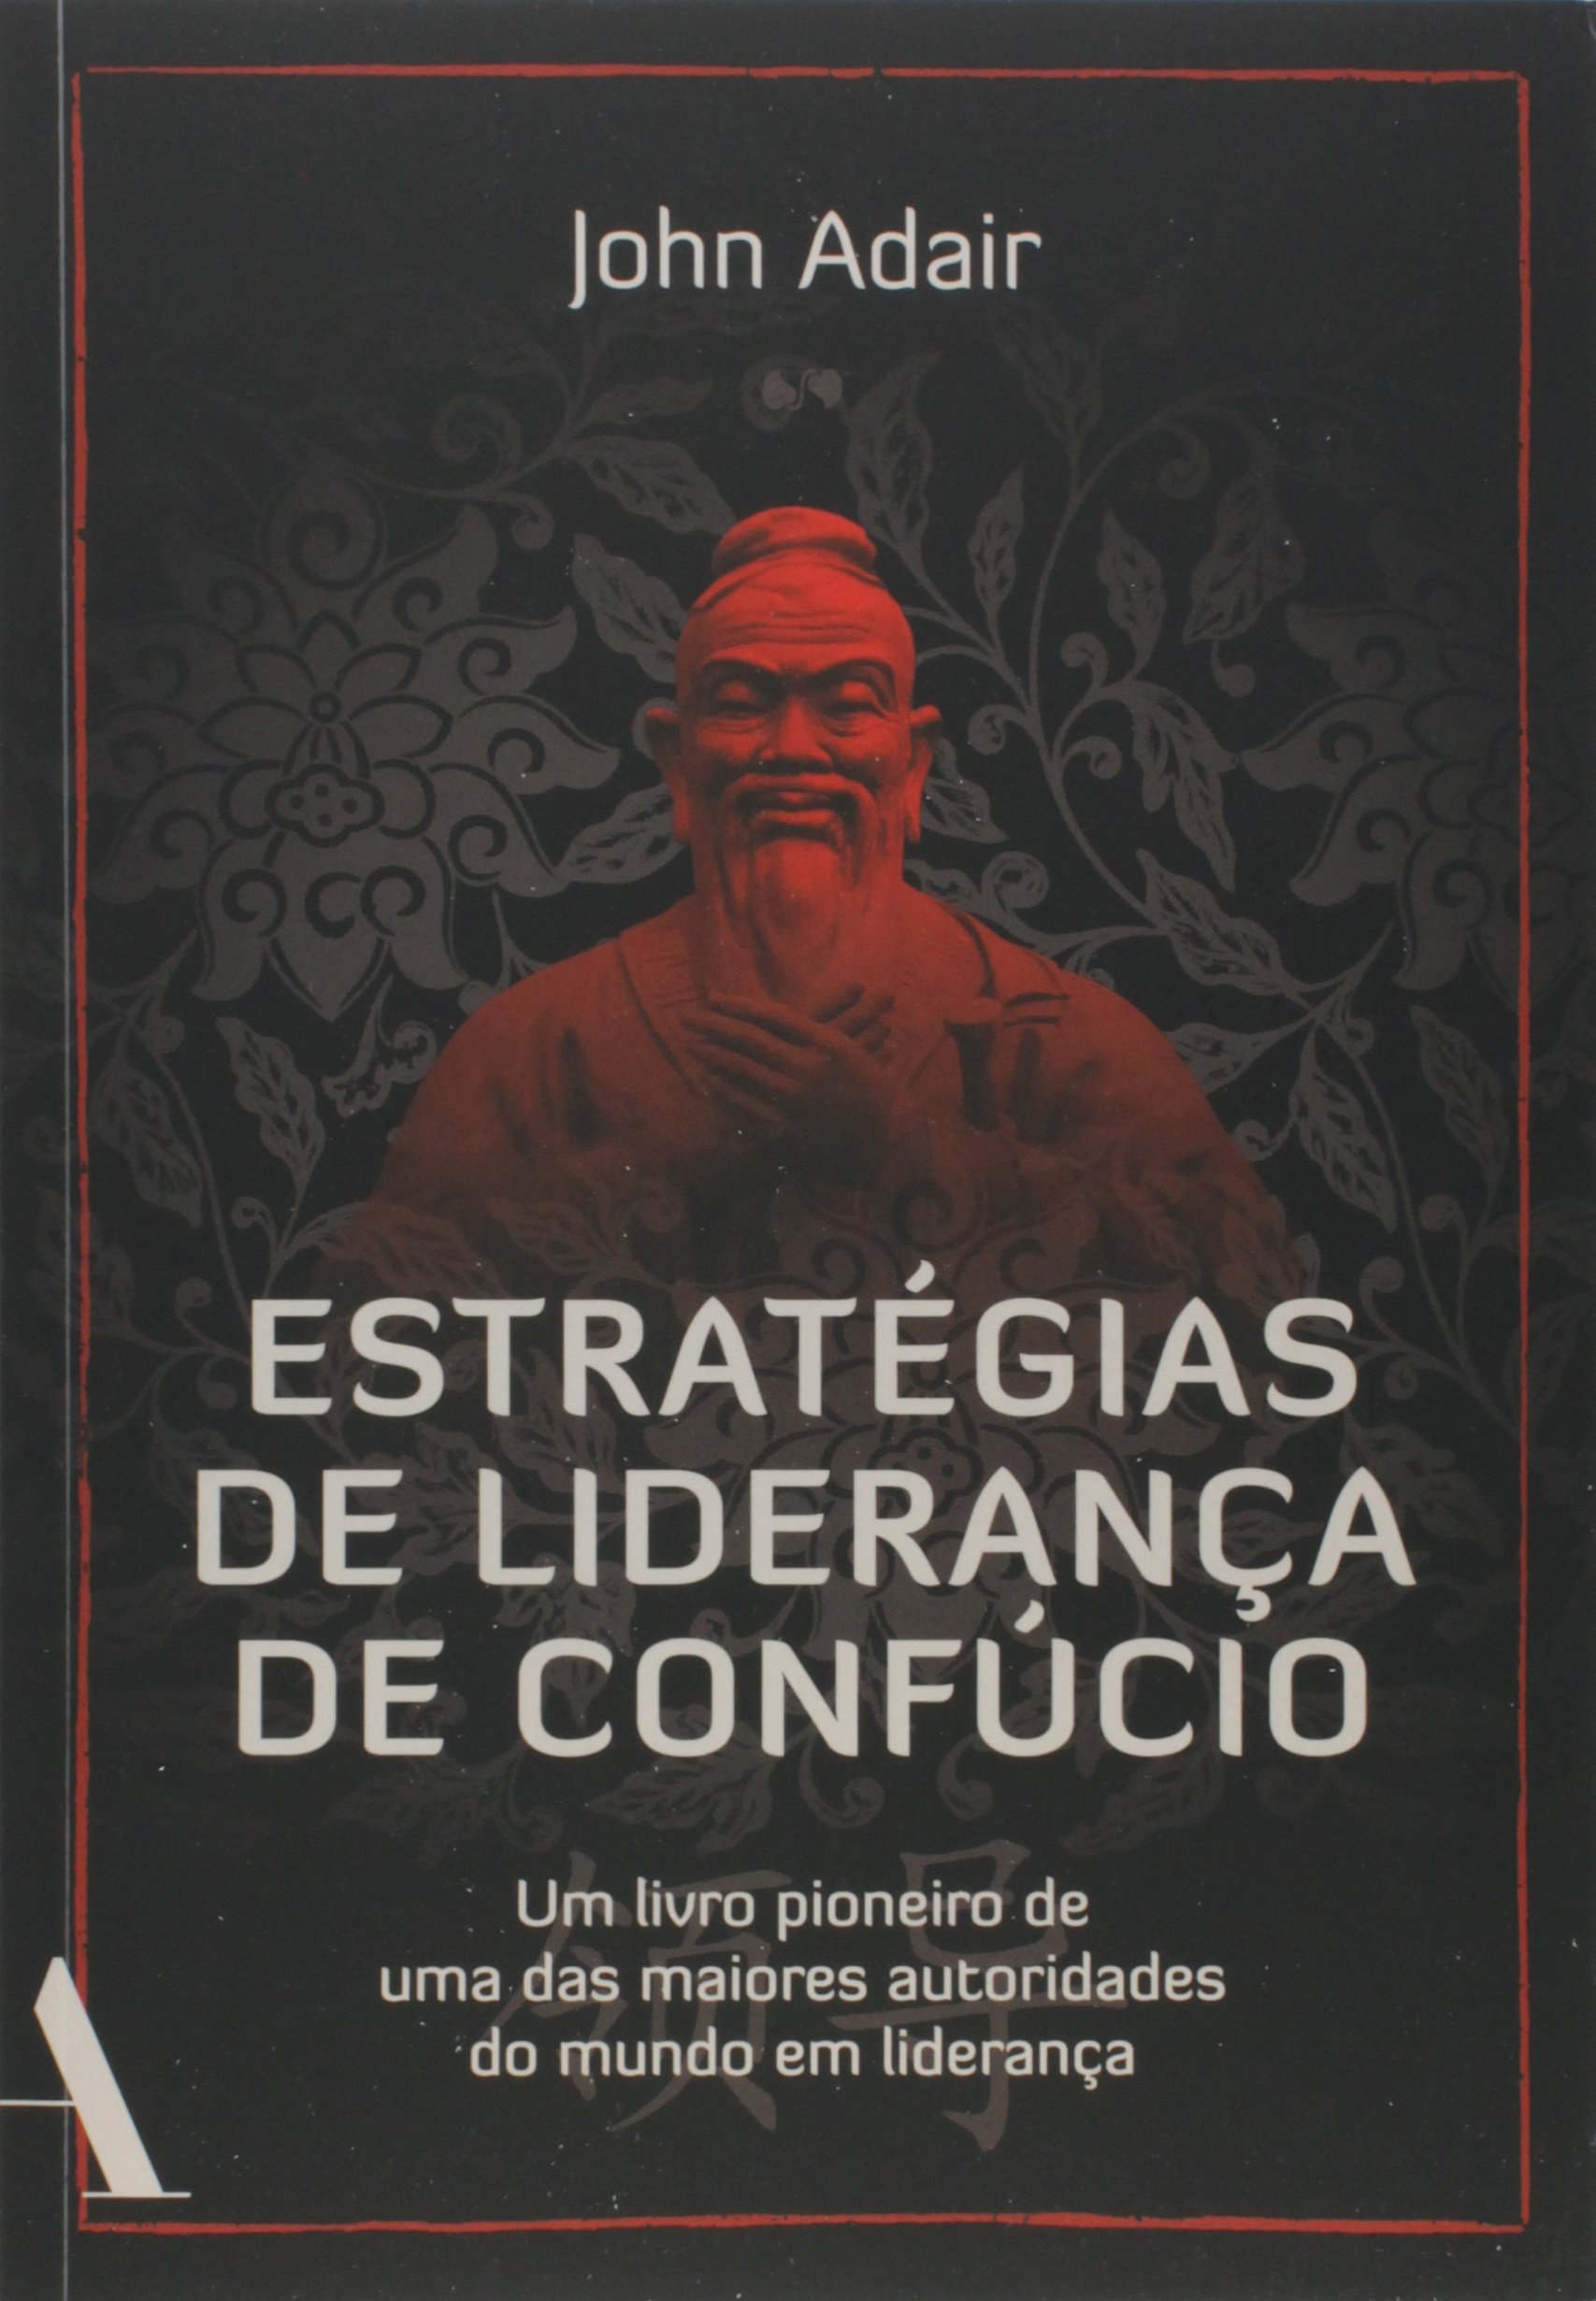 Livro "Estratégias de Liderança de Confúcio" de John Adair